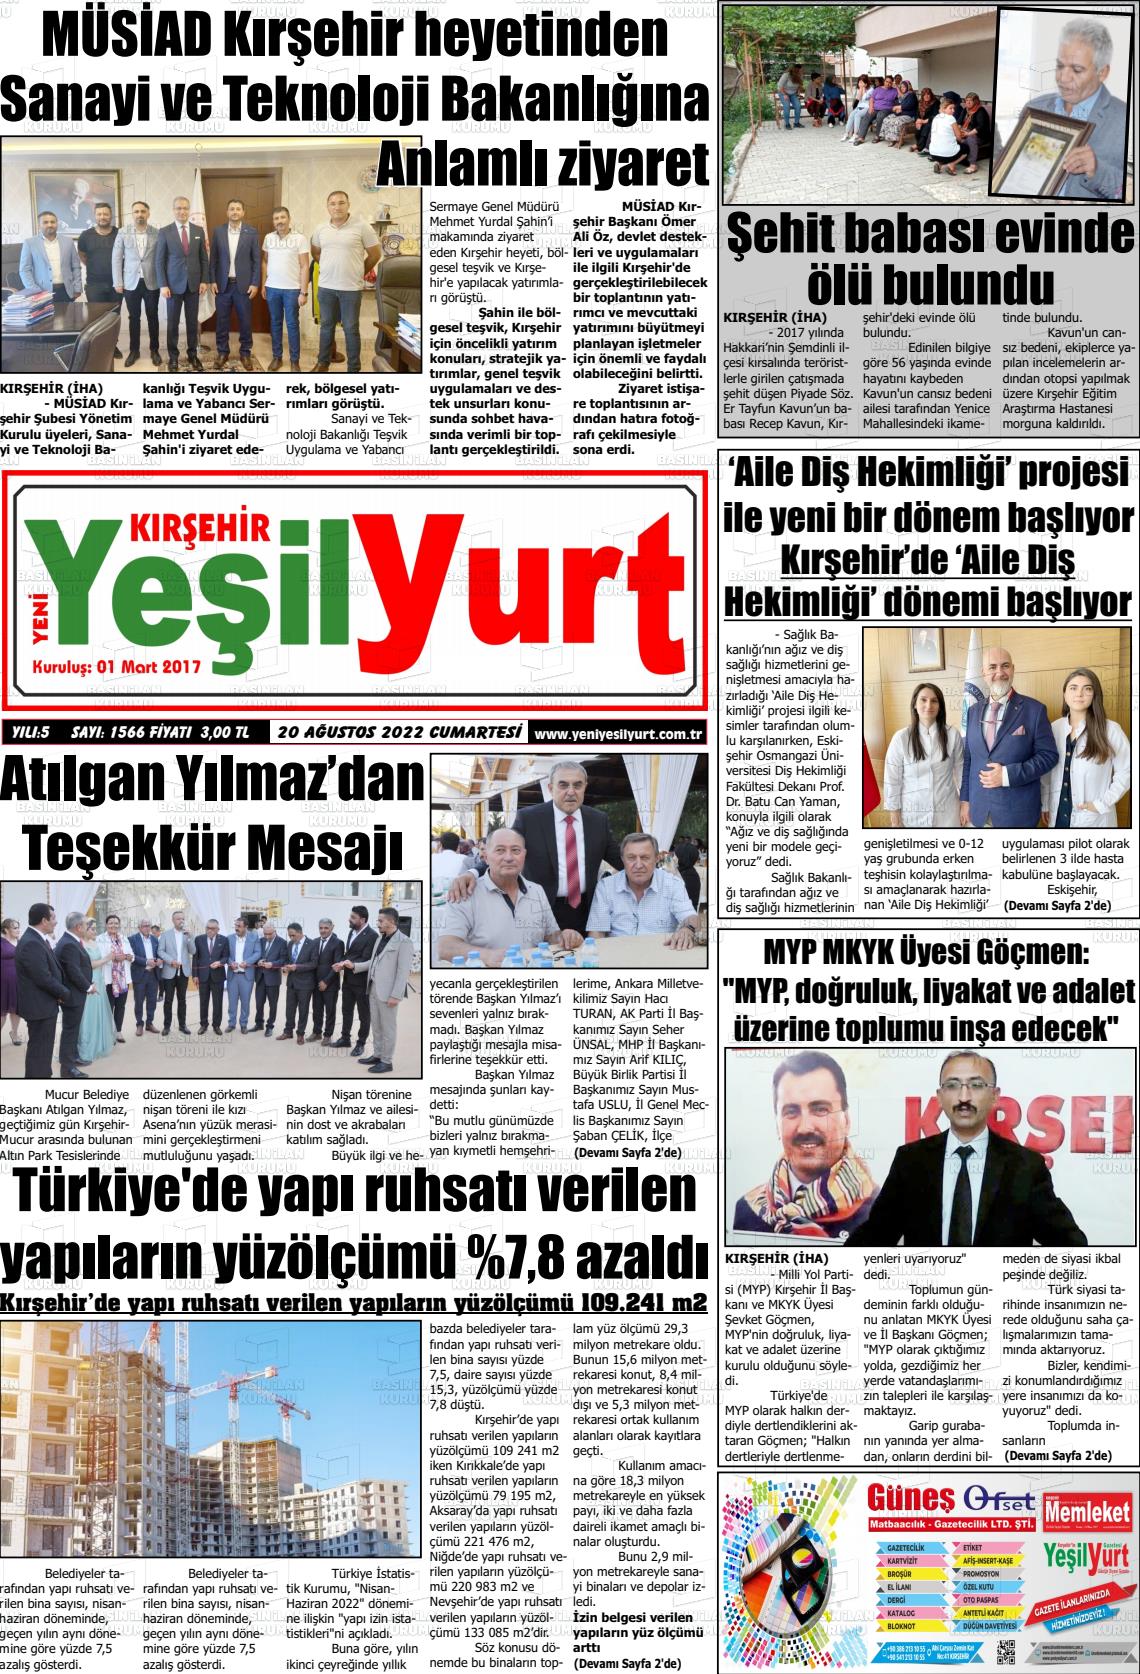 20 Ağustos 2022 Yeni Yeşilyurt Gazete Manşeti